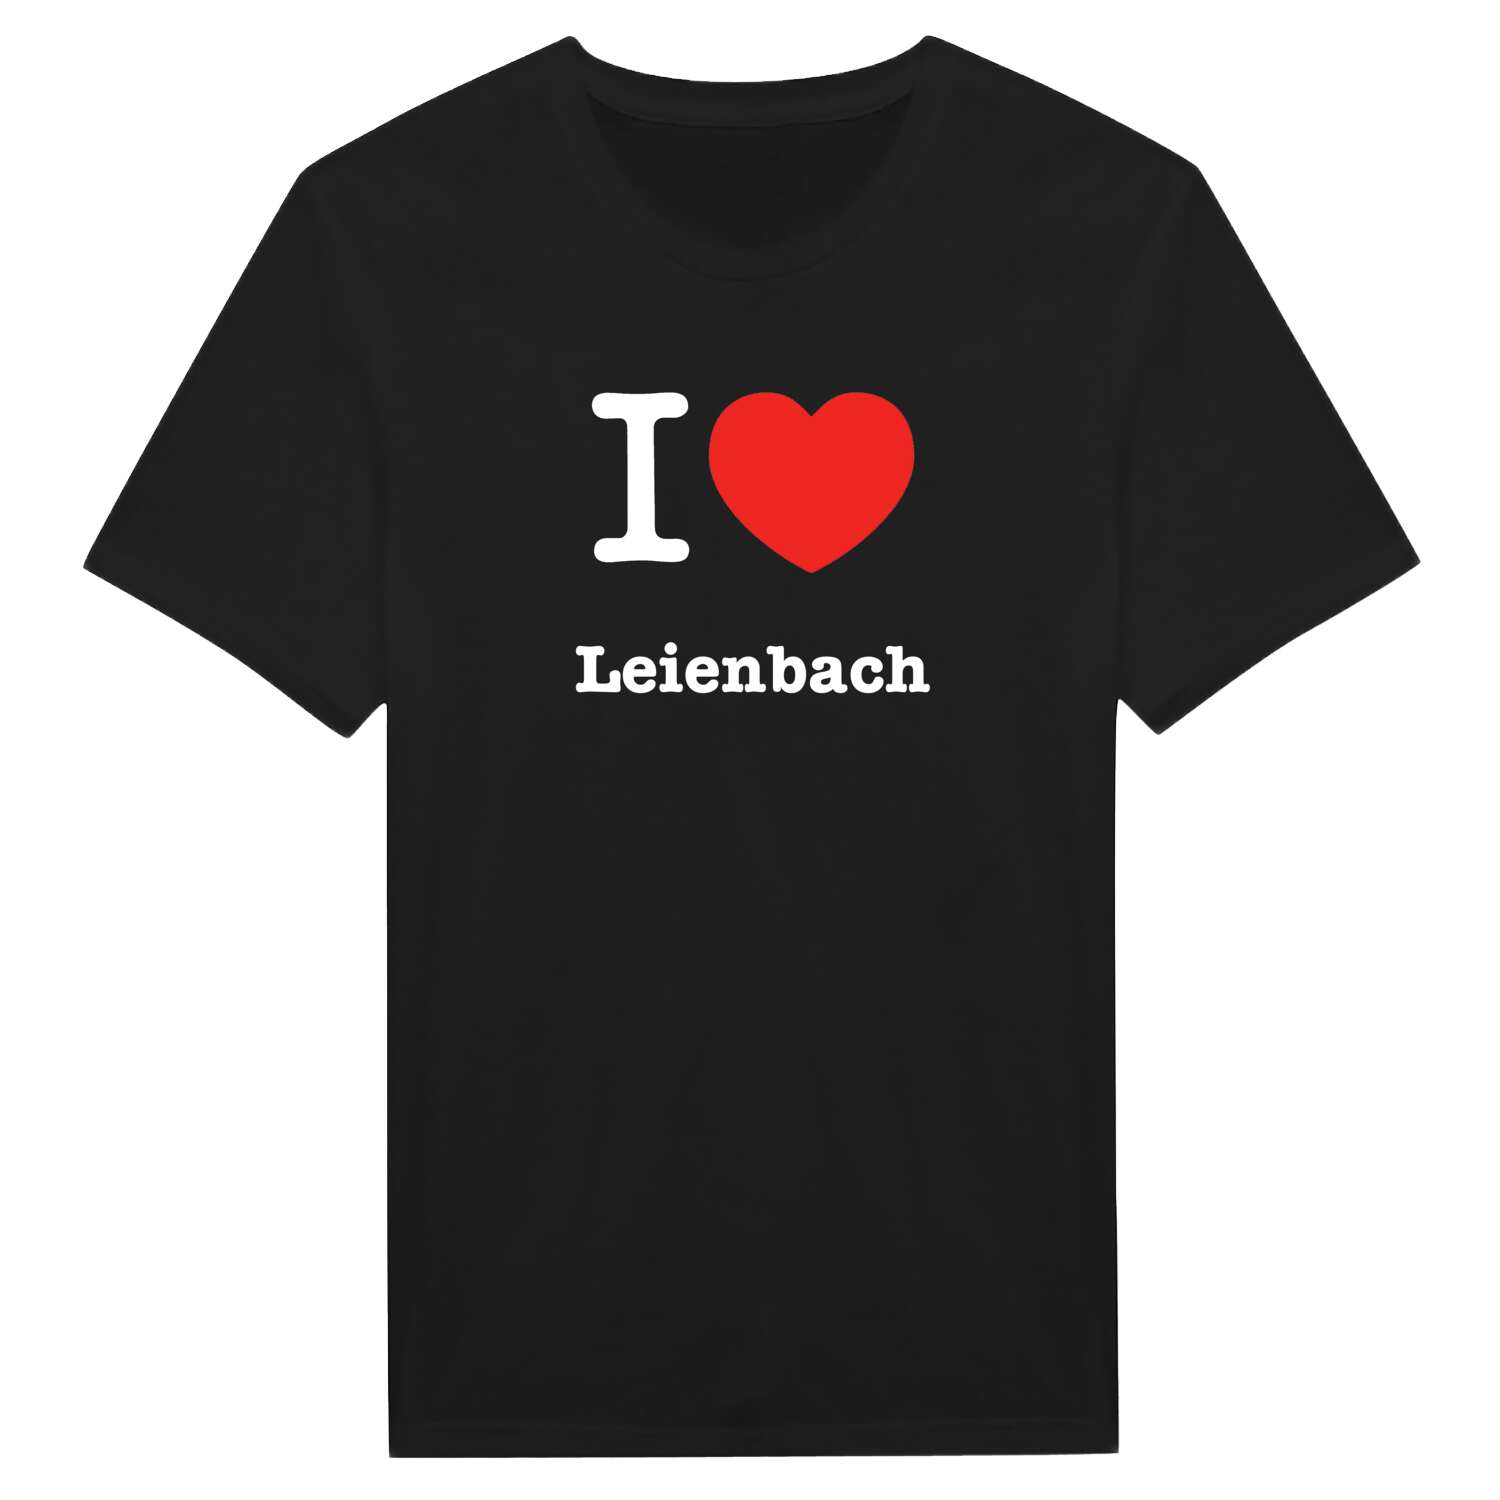 Leienbach T-Shirt »I love«